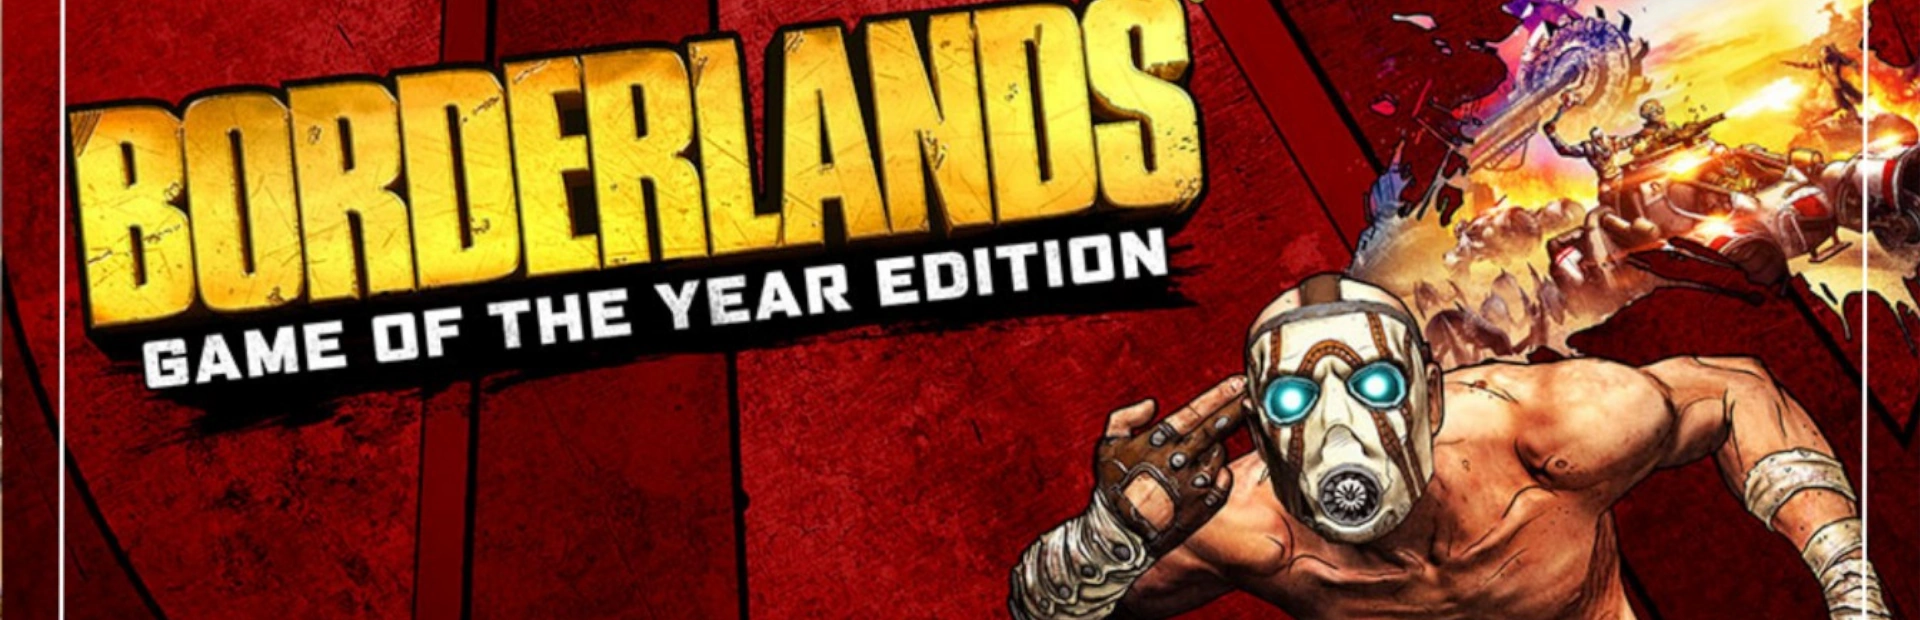 دانلود بازی Borderlands Game of the Year برای PC | گیمباتو